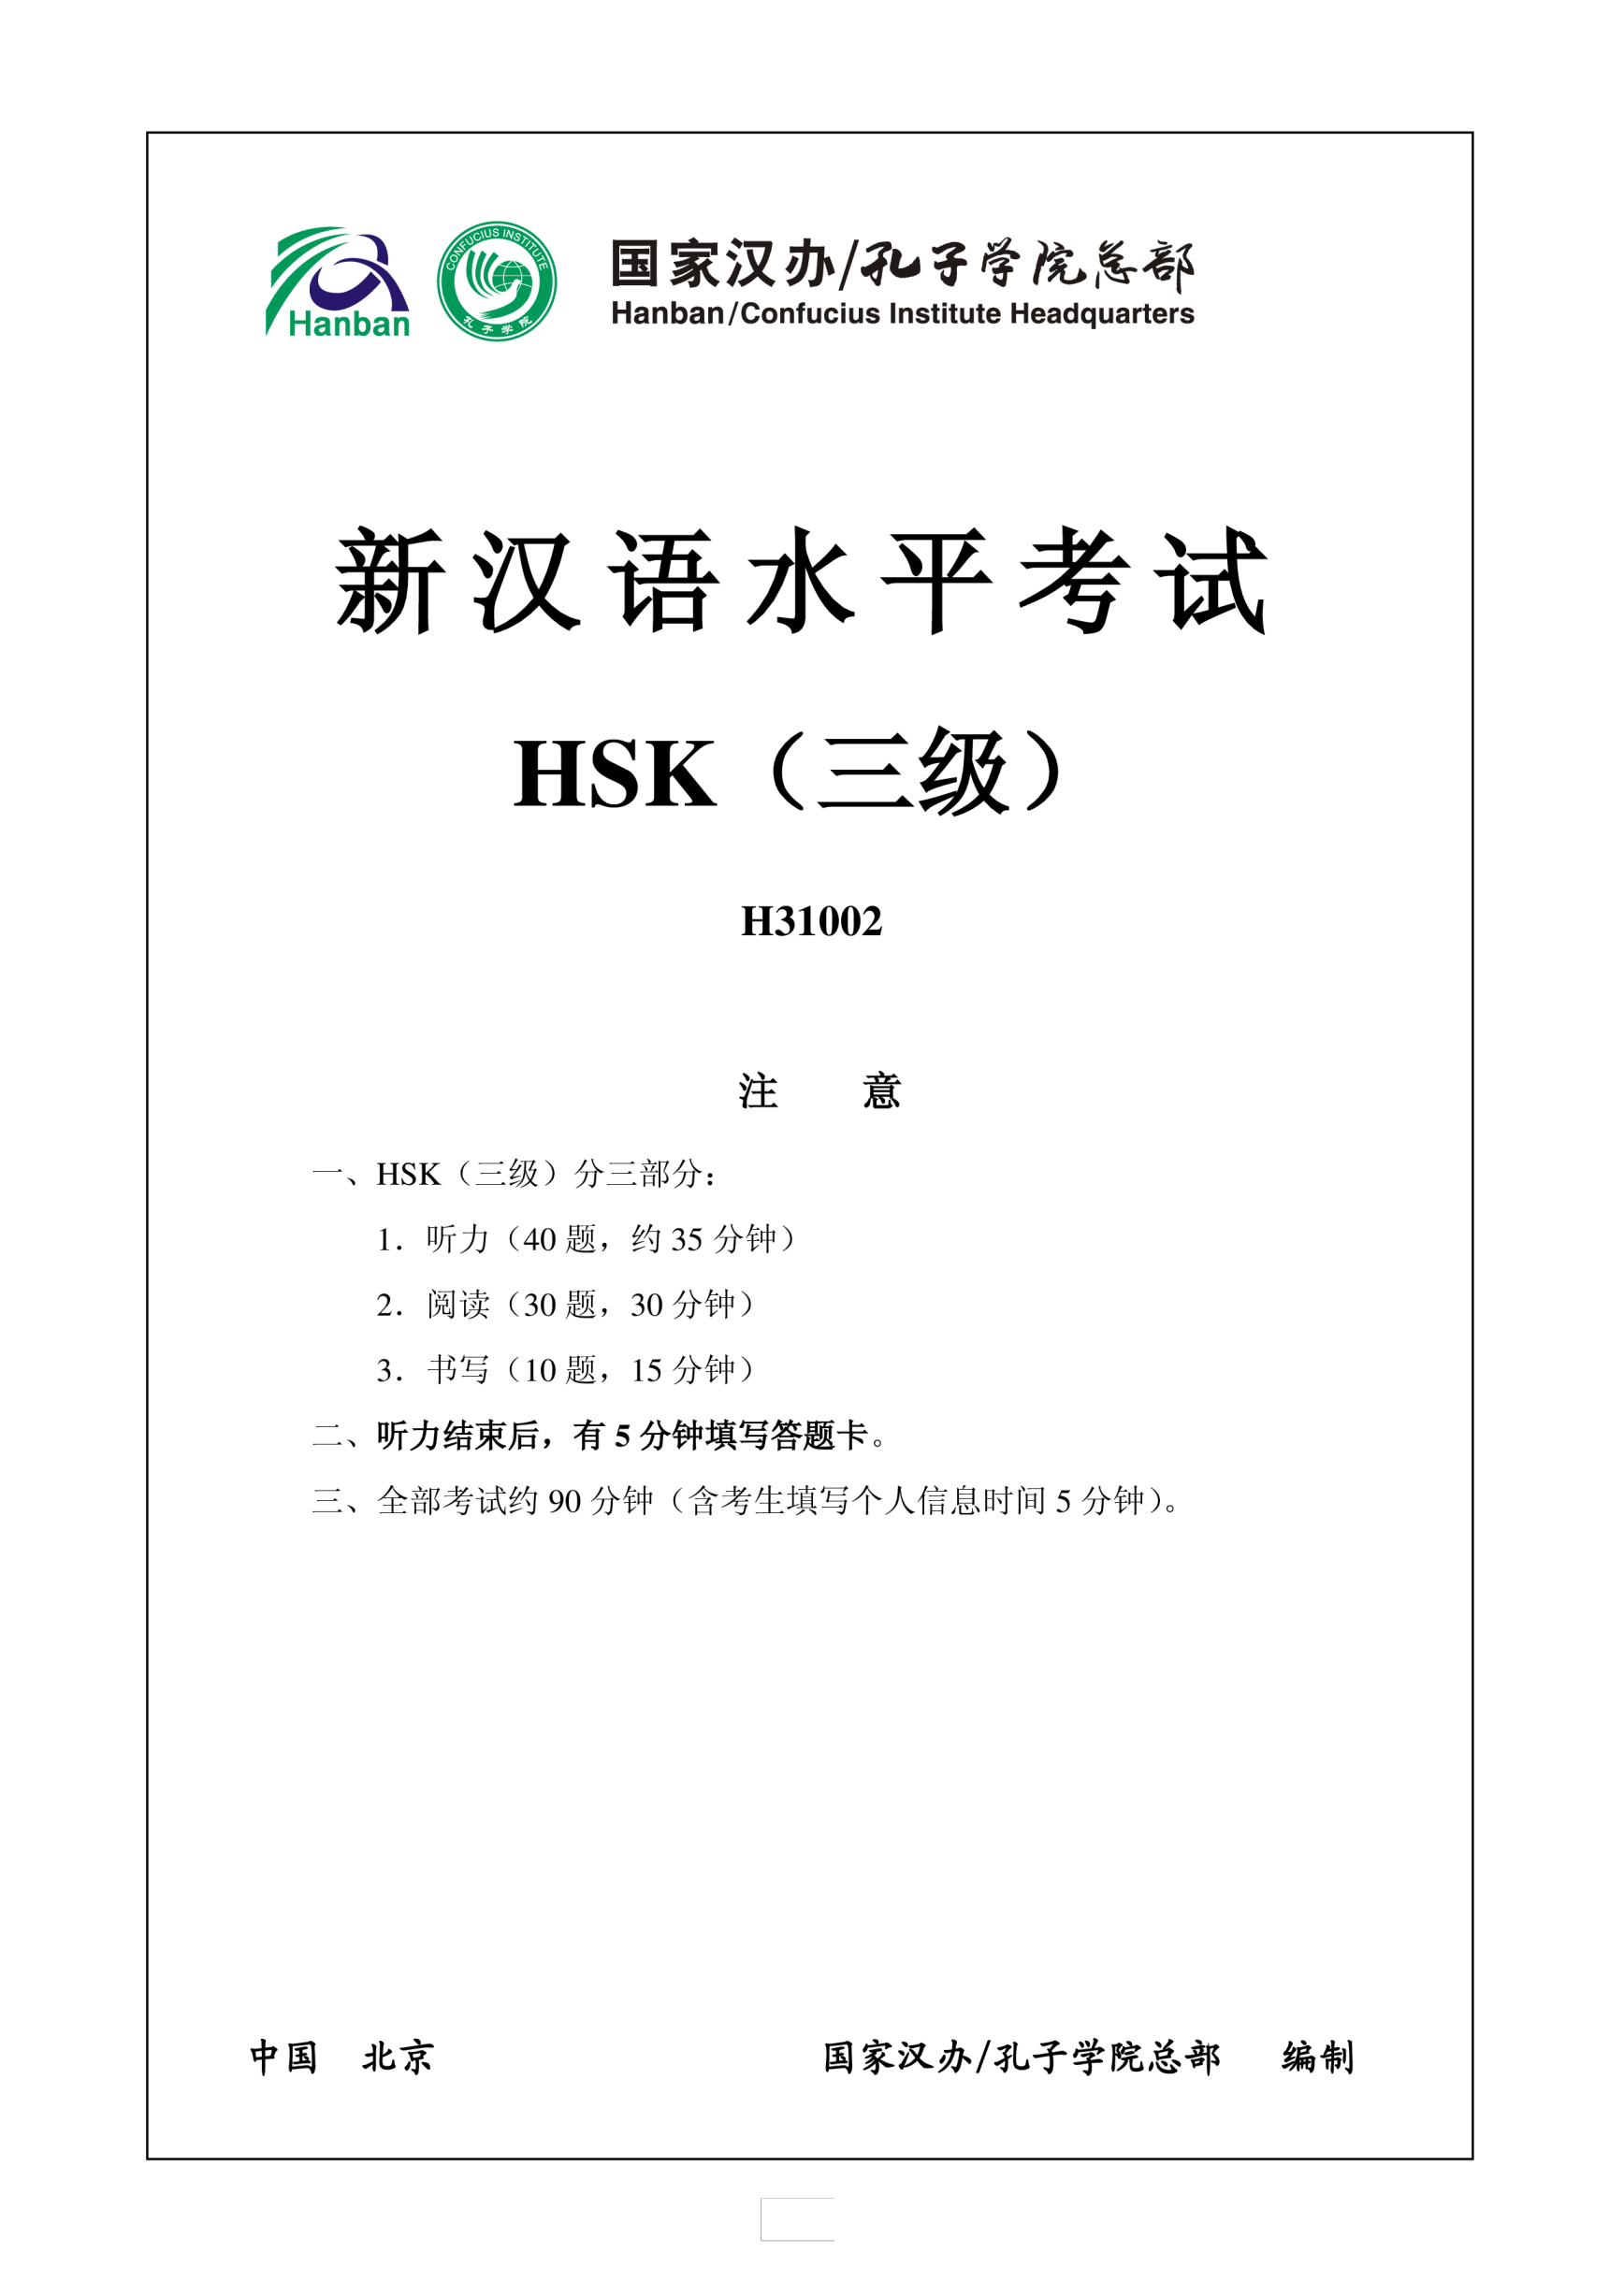 Vorschaubild der VorlageHSK3 Chinese Exam including Answers HSK3 H31002